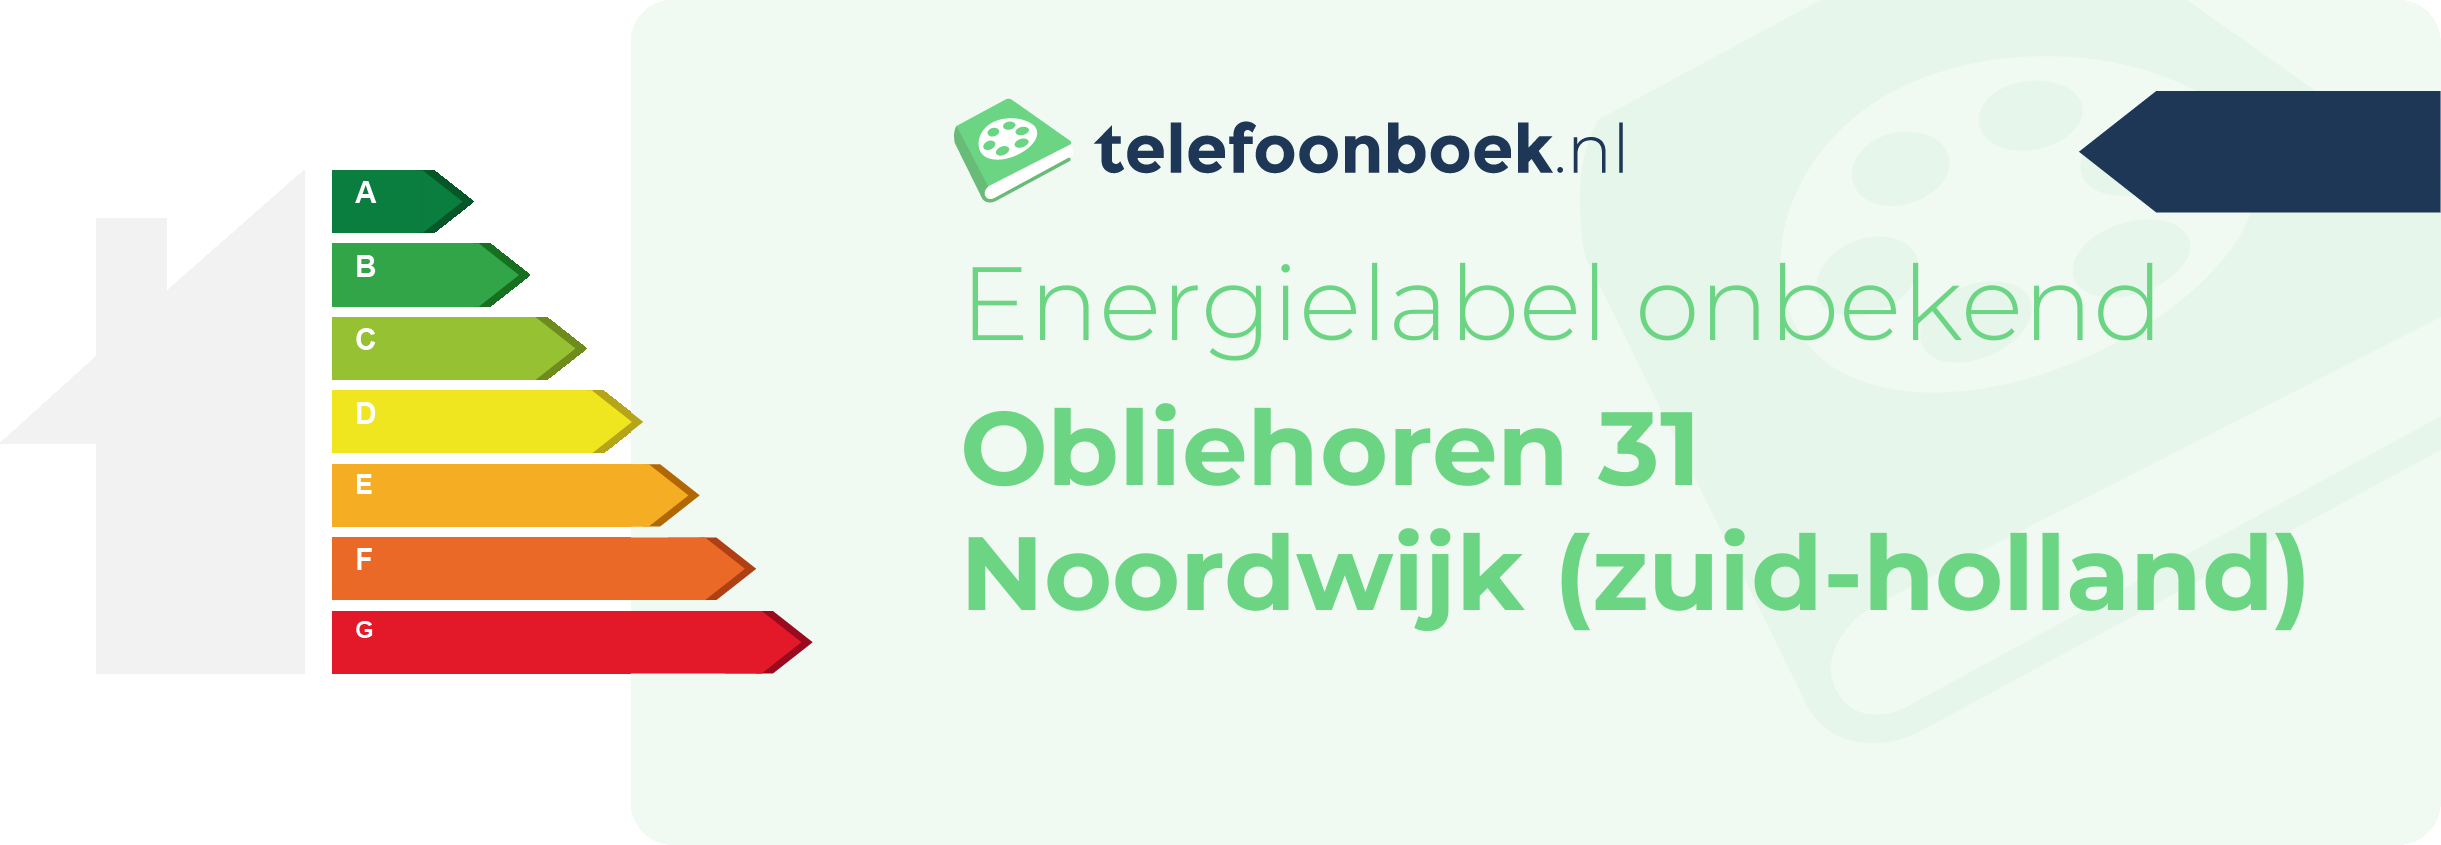 Energielabel Obliehoren 31 Noordwijk (Zuid-Holland)